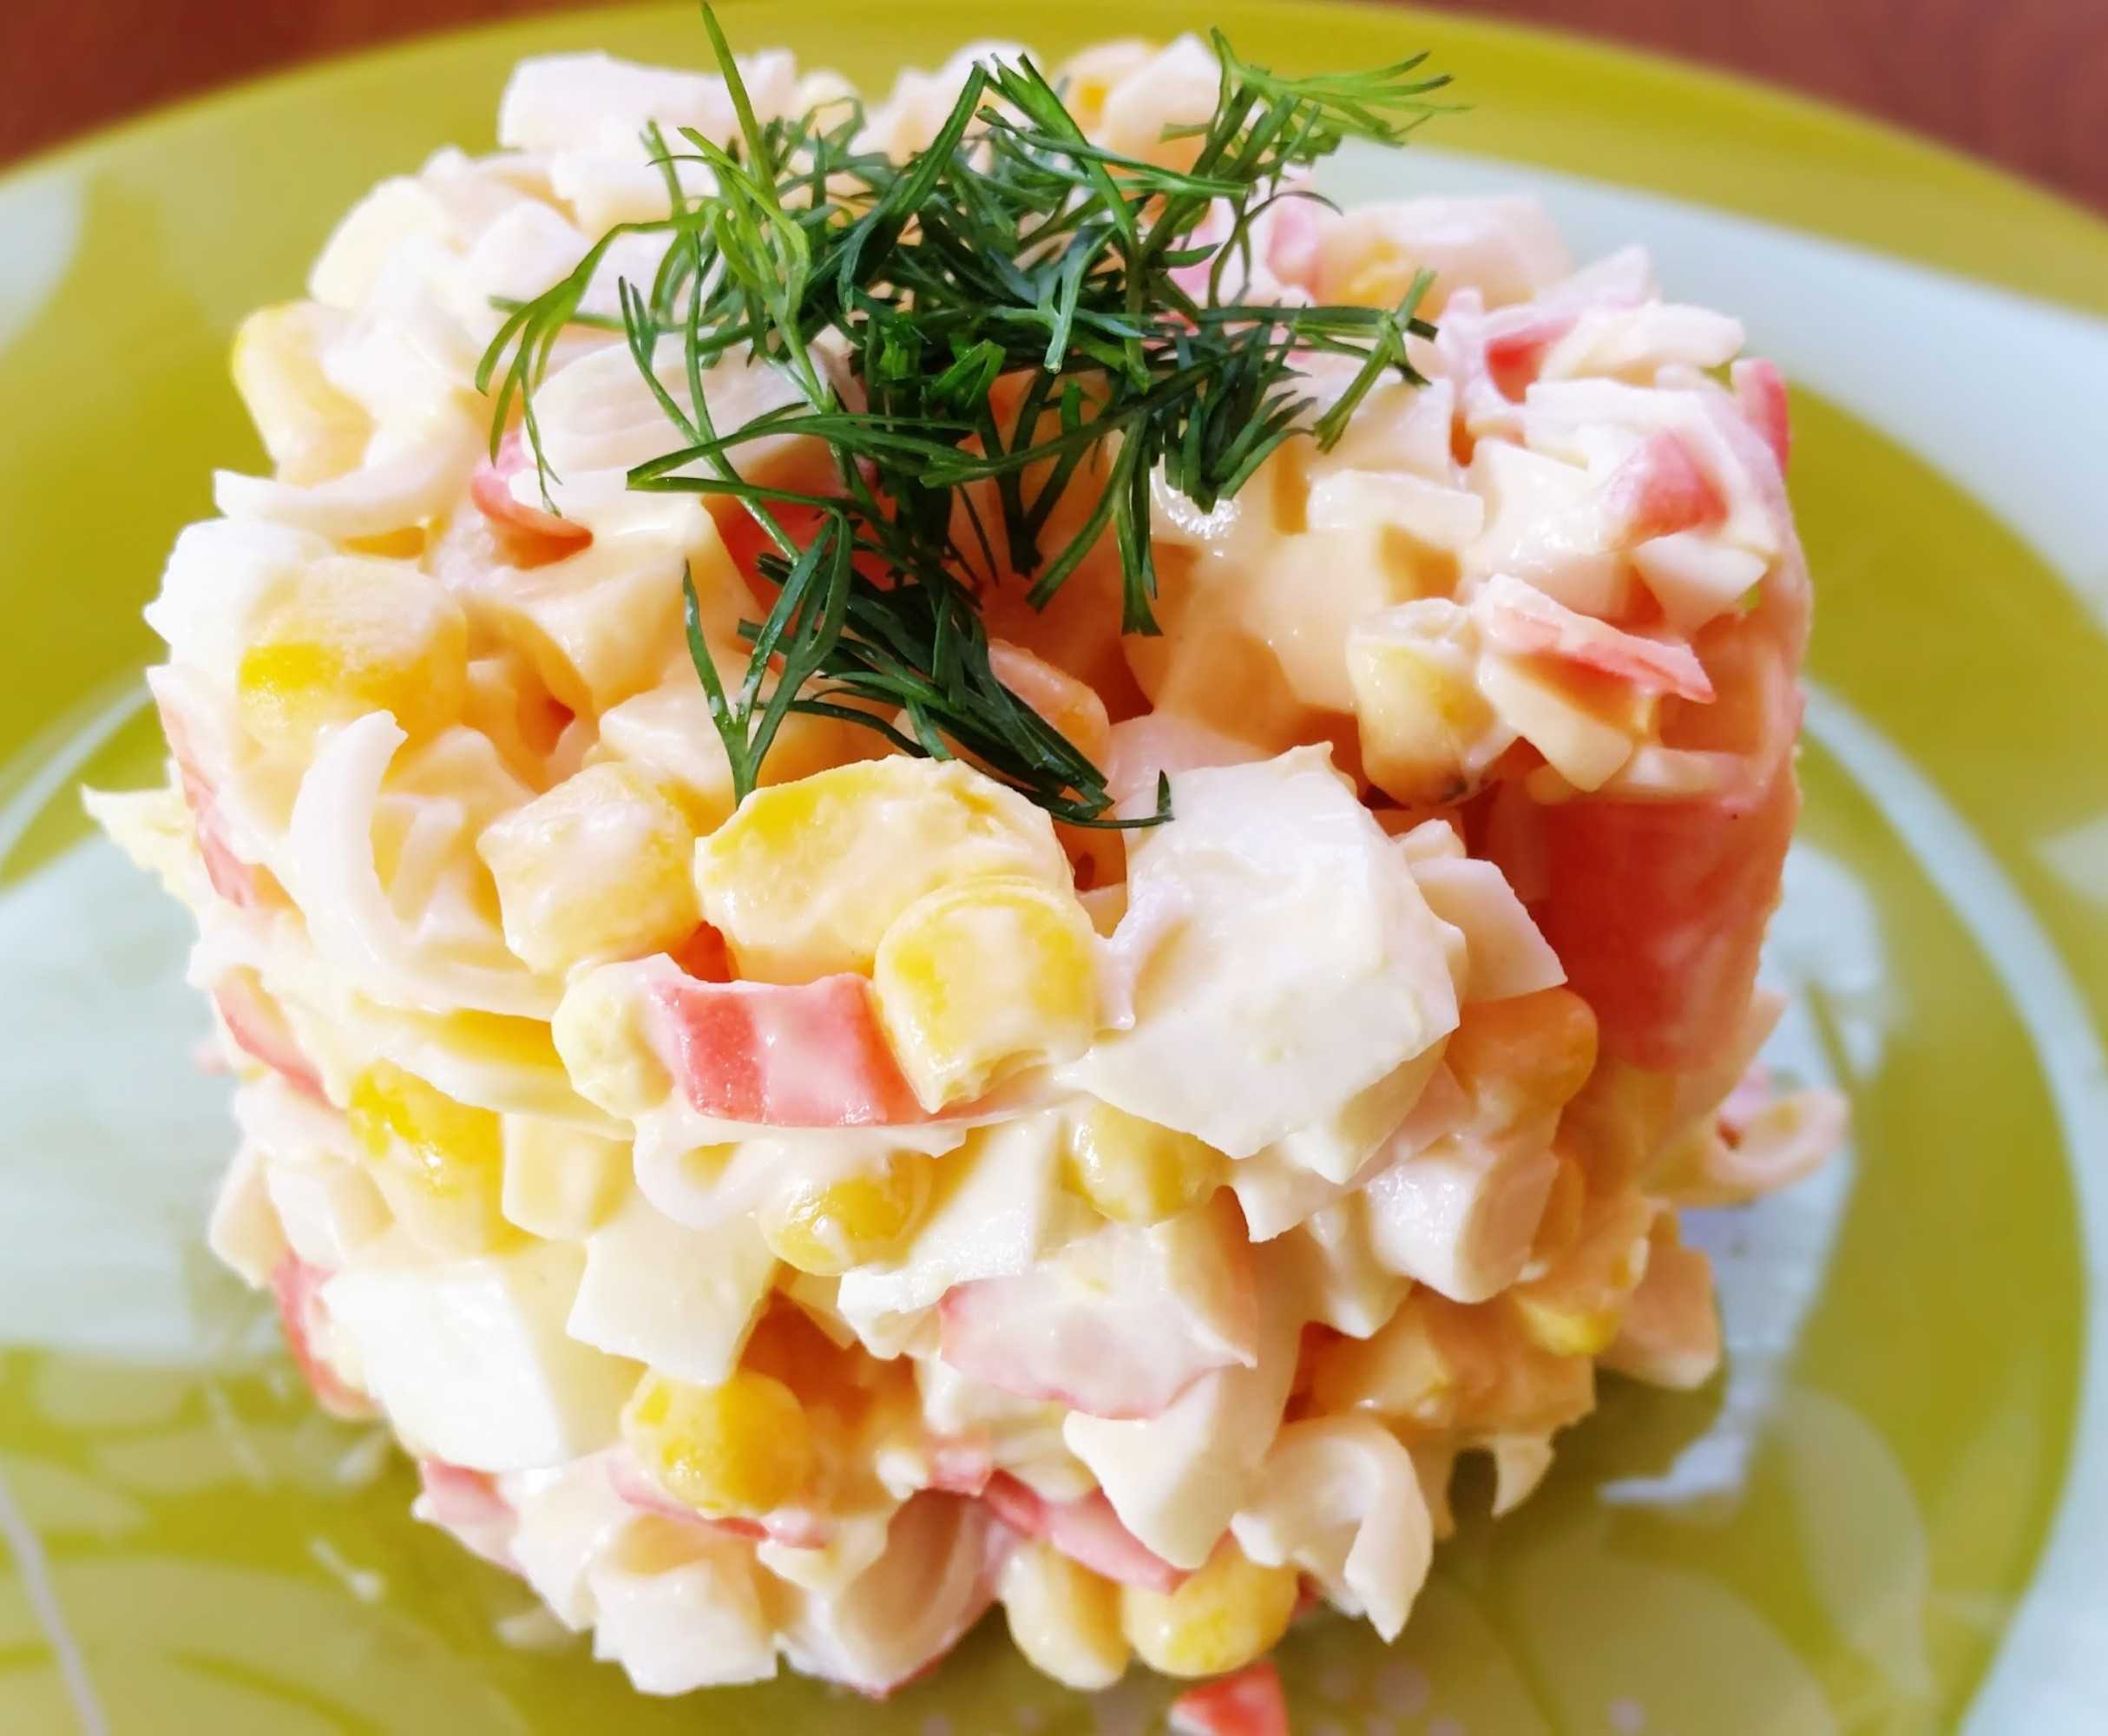 Салат с креветками и кальмарами - 10 самых вкусных рецептов с пошаговыми фото